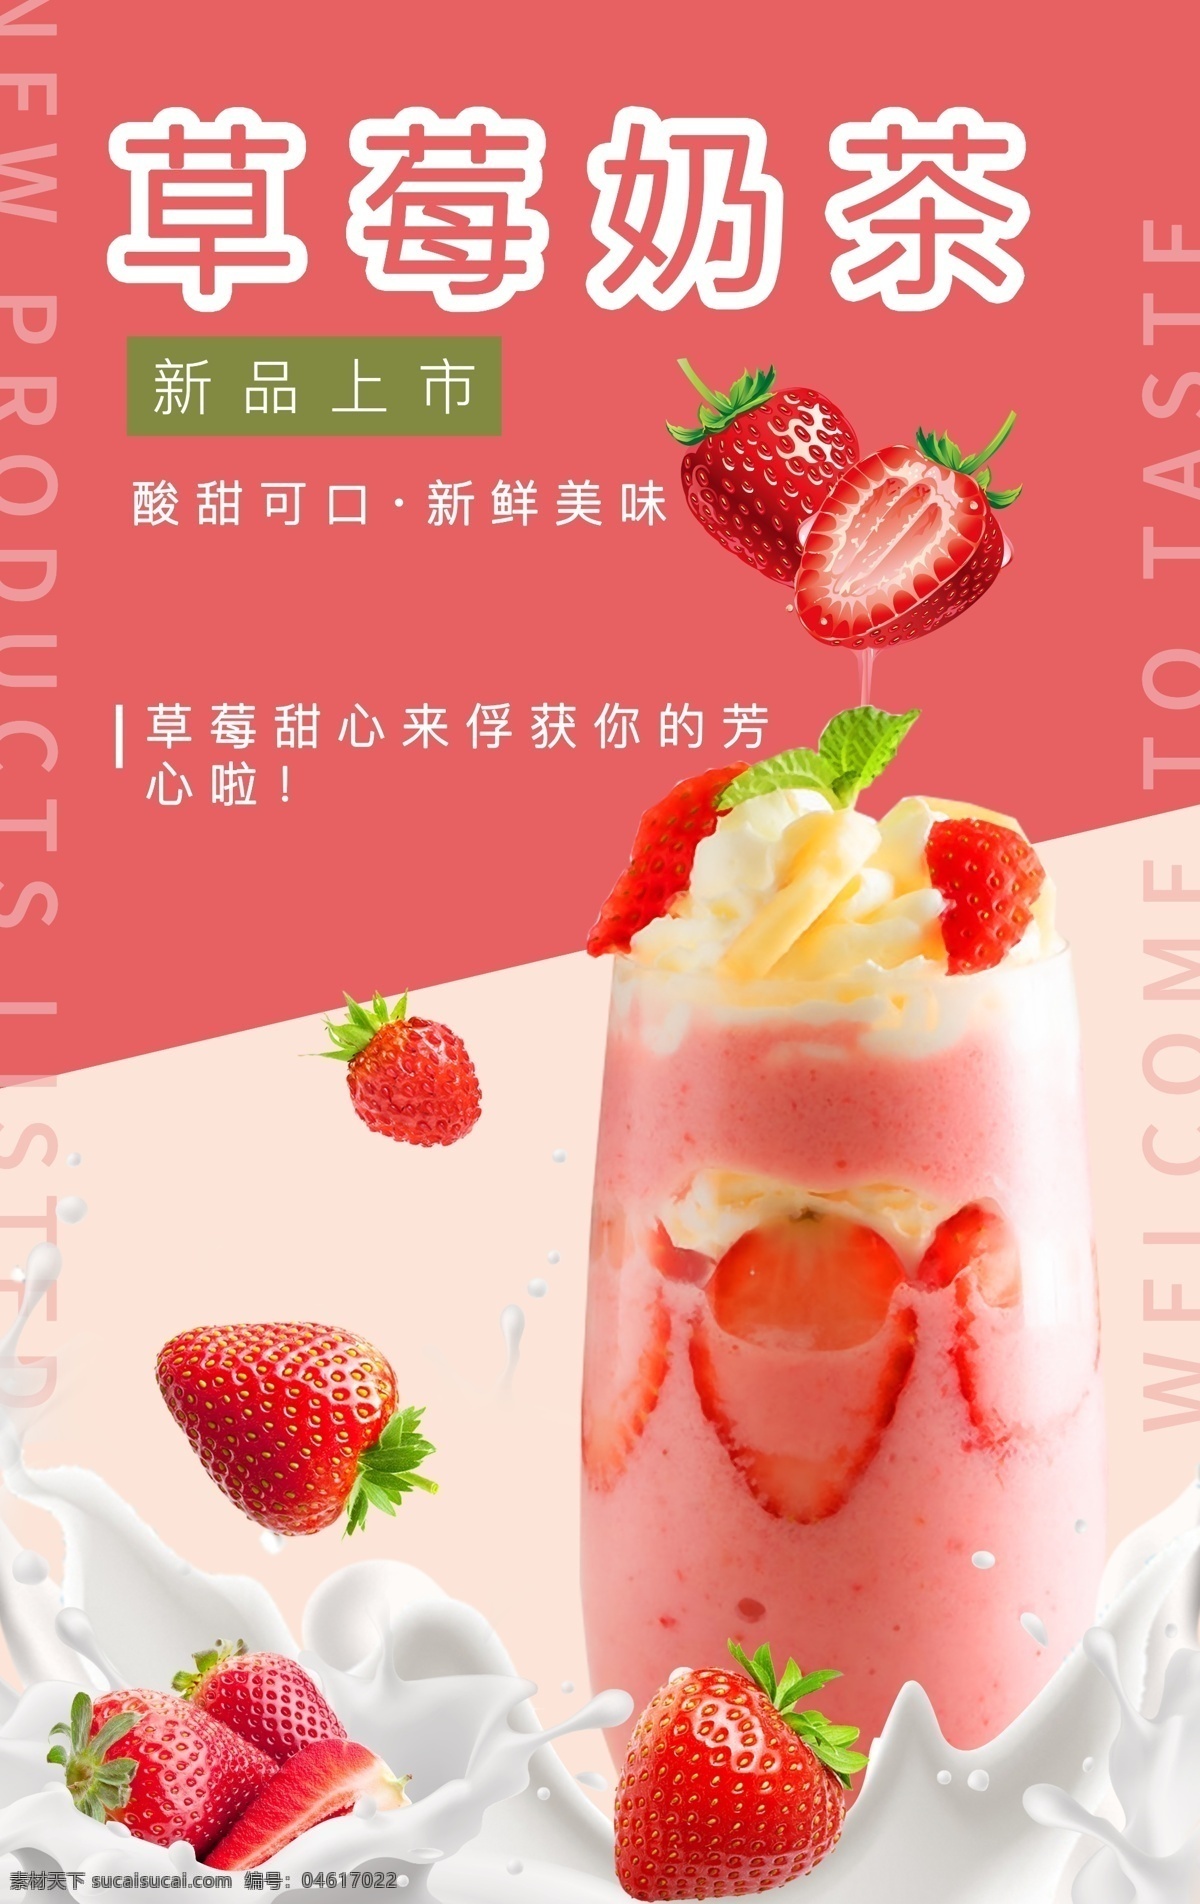 草莓奶茶图片 草莓奶茶 奶茶海报 新品上市 海报 饮品海报